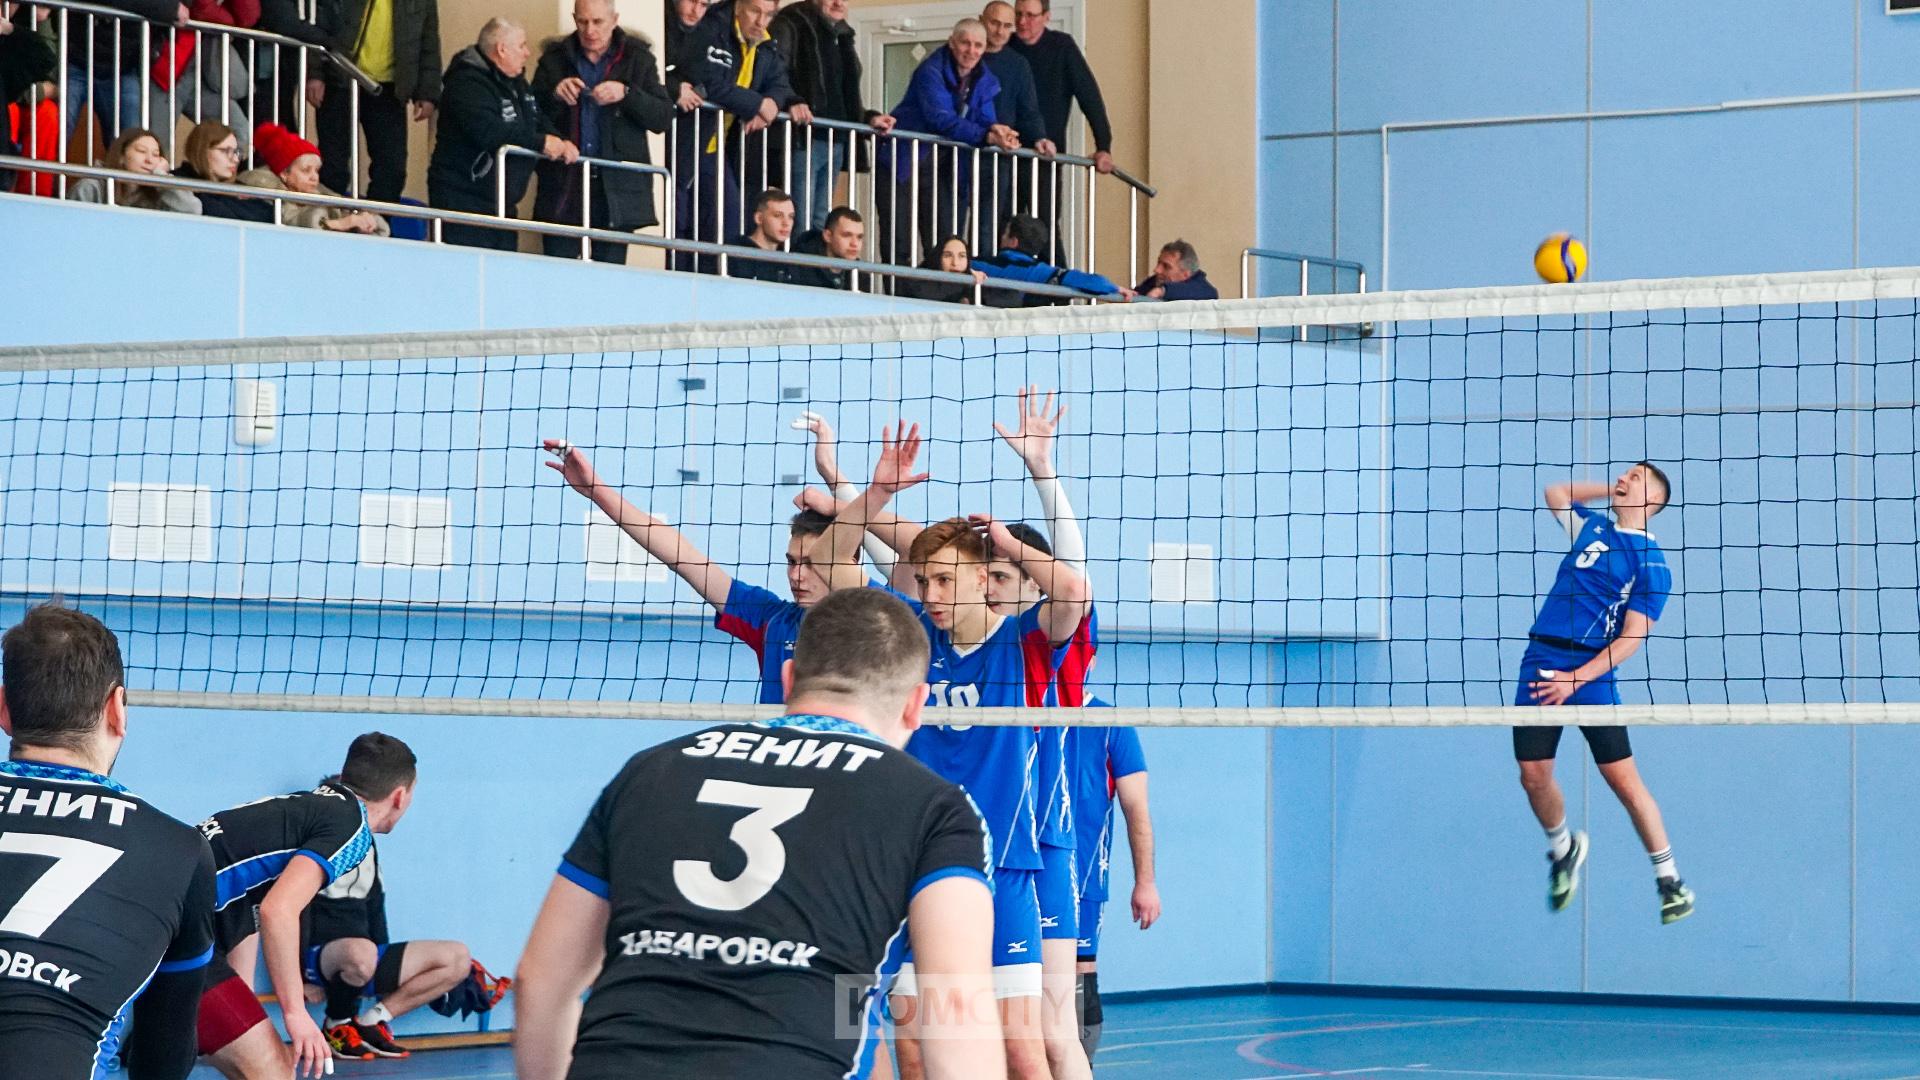 Команда «Газпром» одержала победу в волейбольном турнире памяти С. Овчинникова